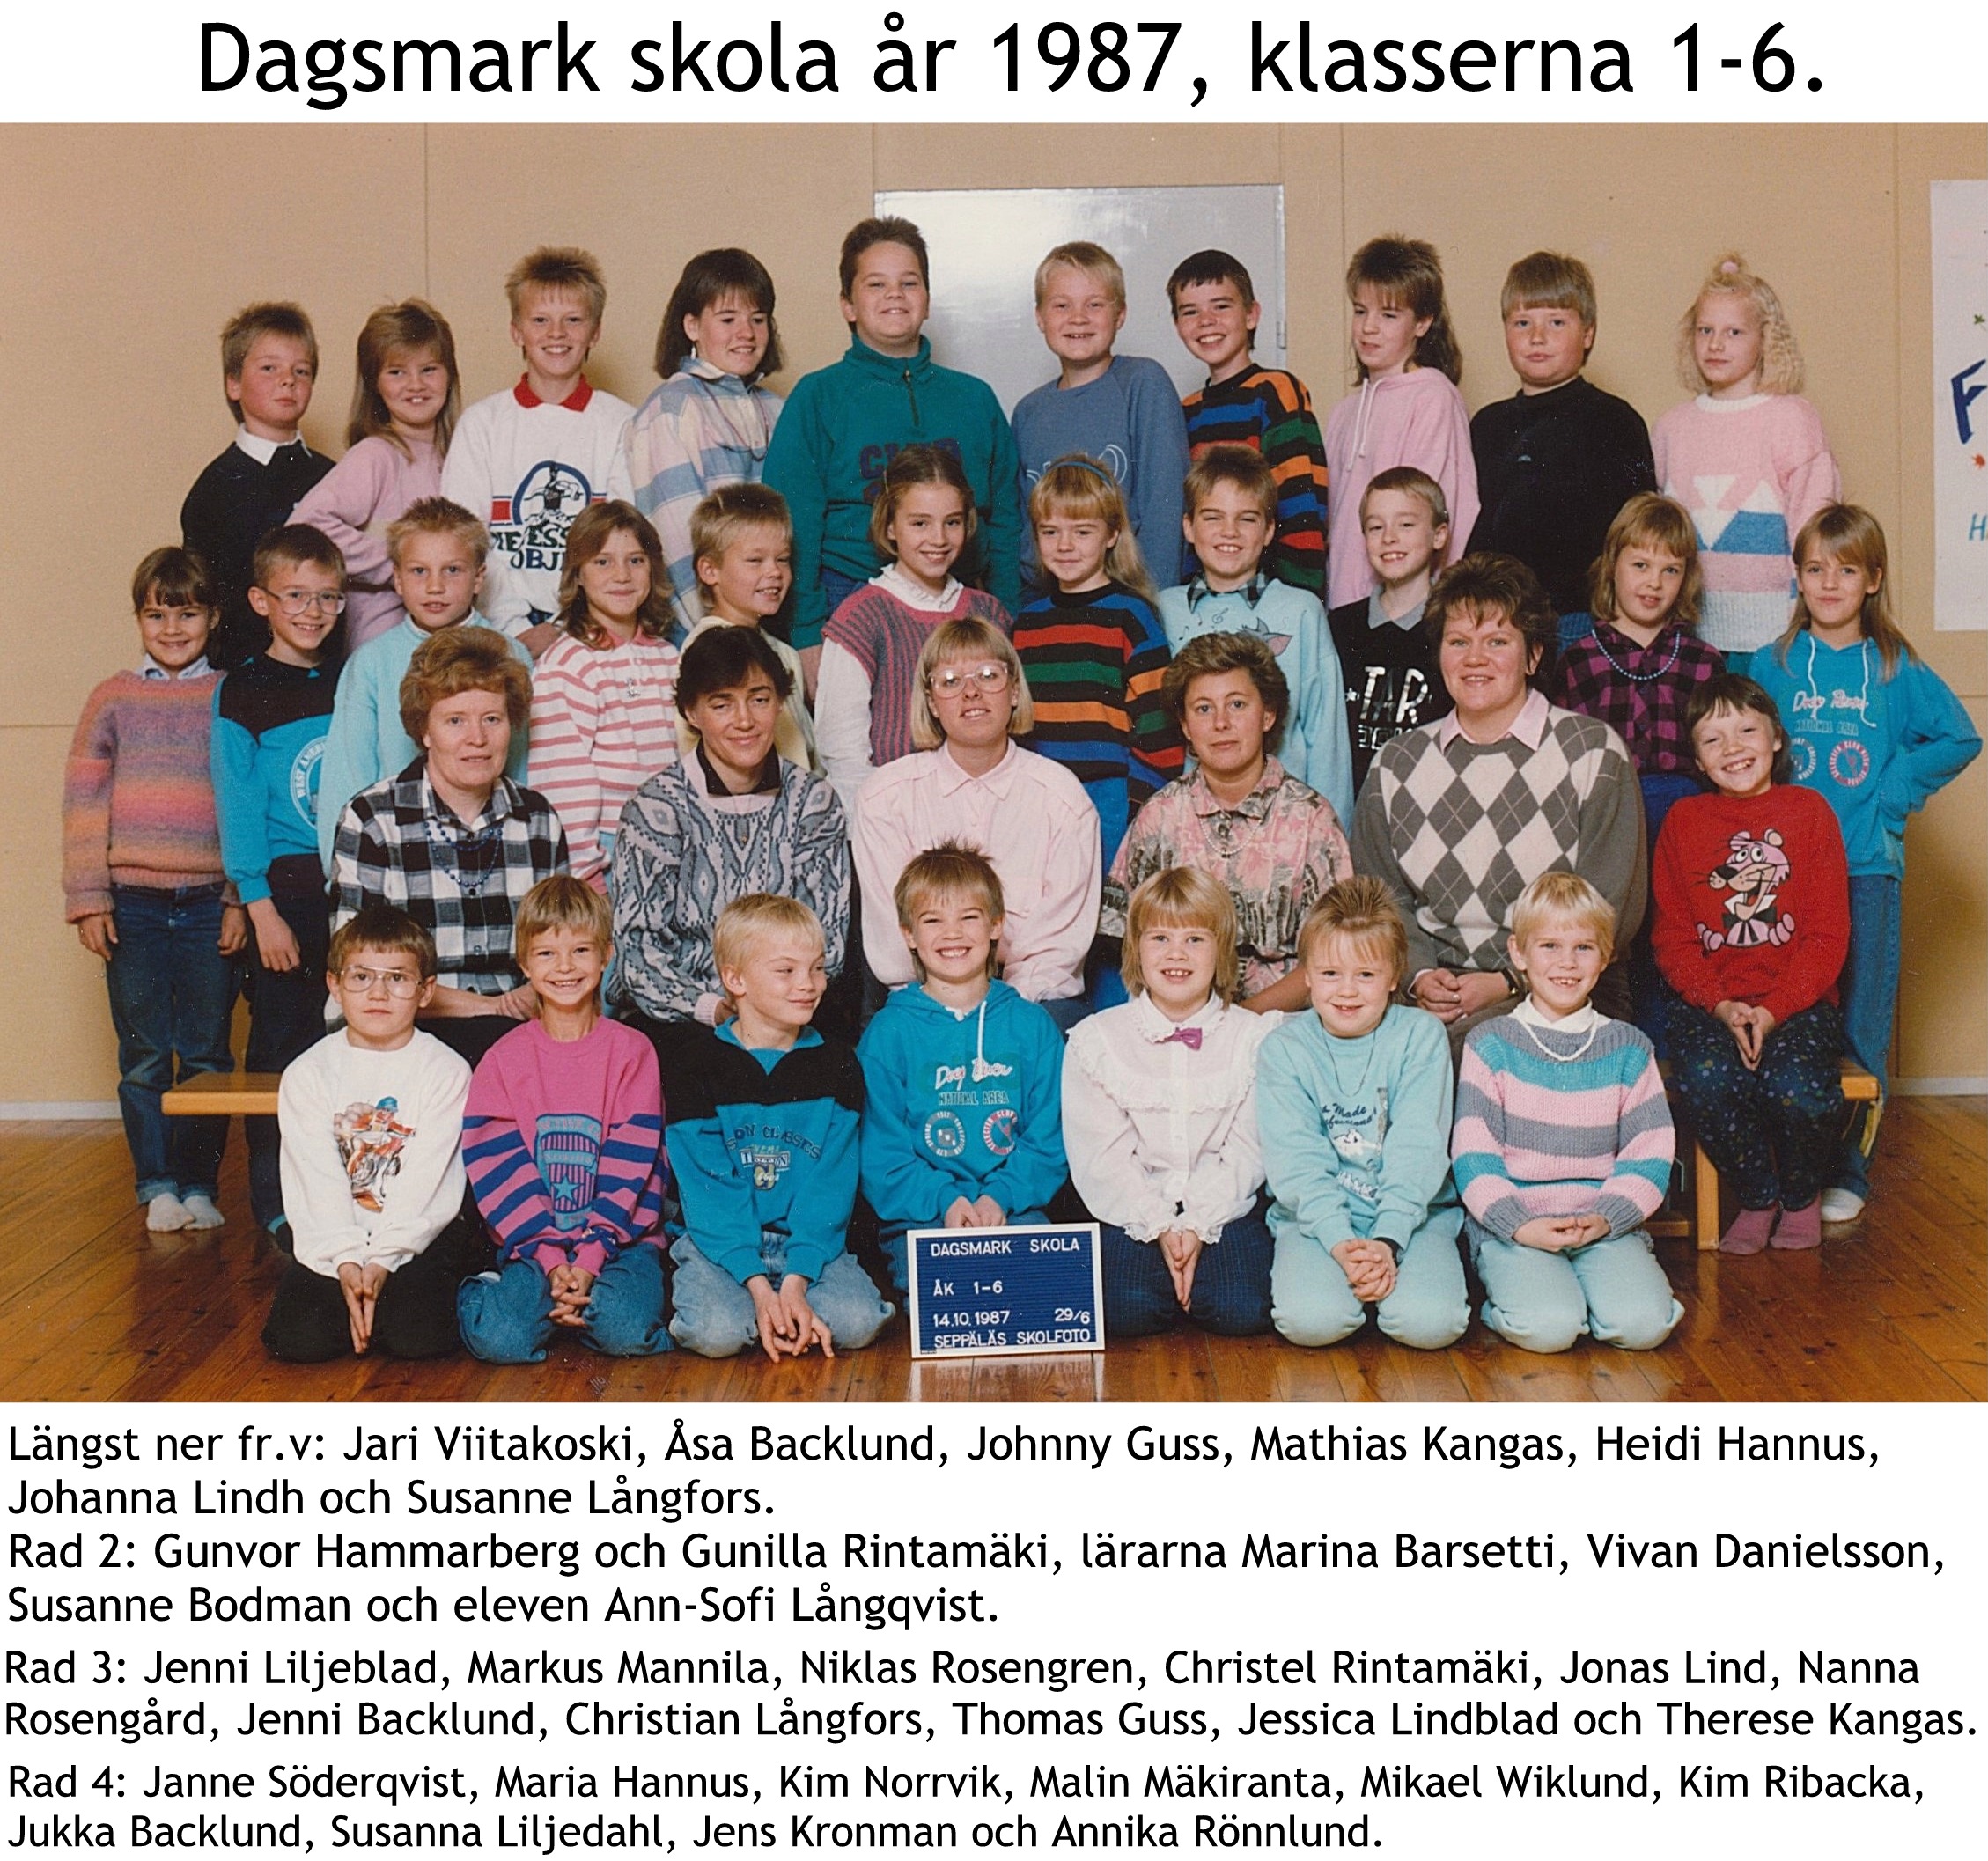 1987 Dagsmark hela skola med namn